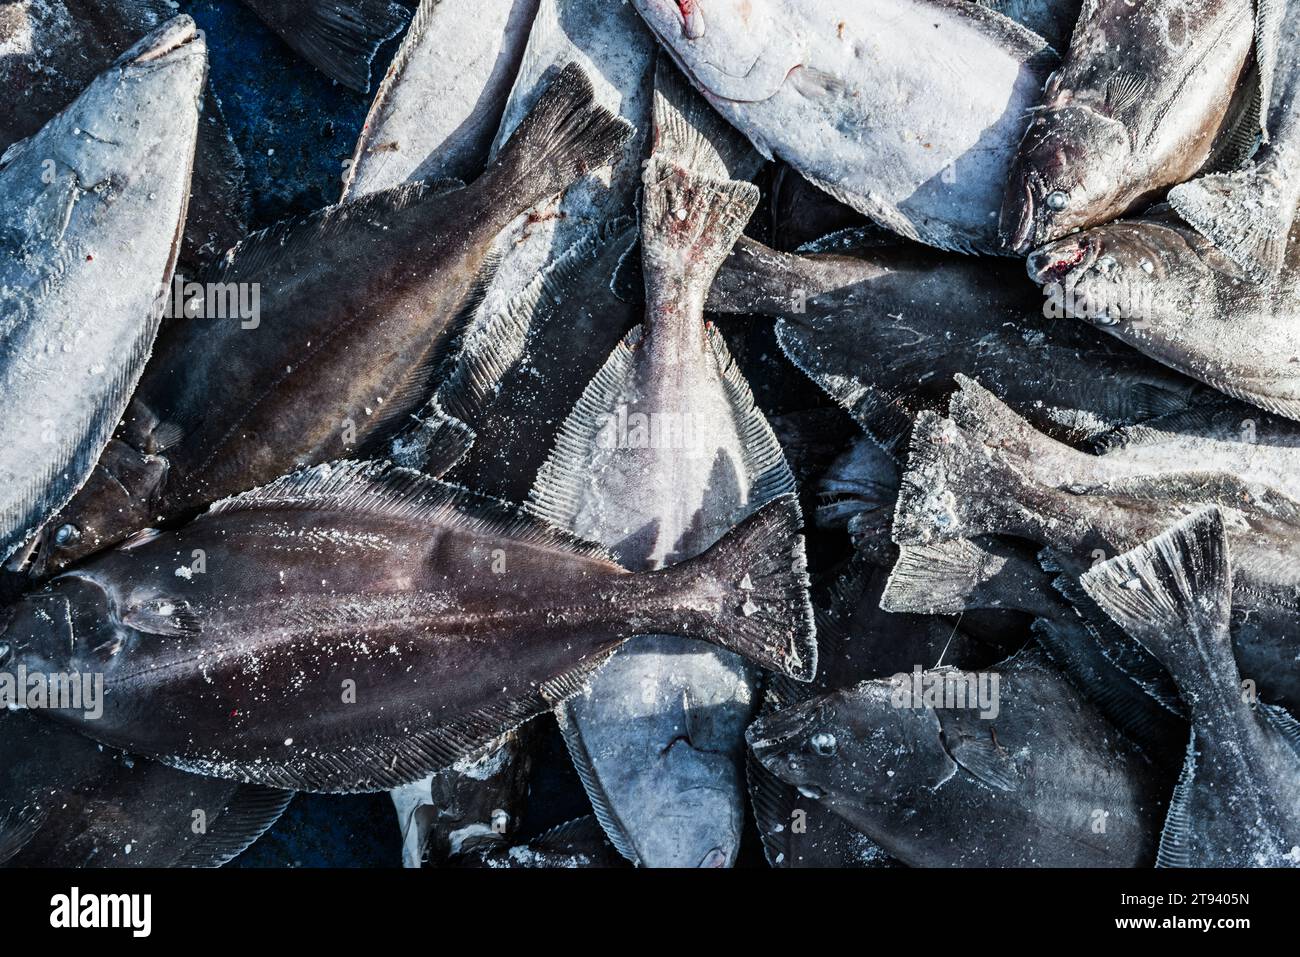 Close-up of frozen fish at Qaanaqq, Greenland Stock Photo